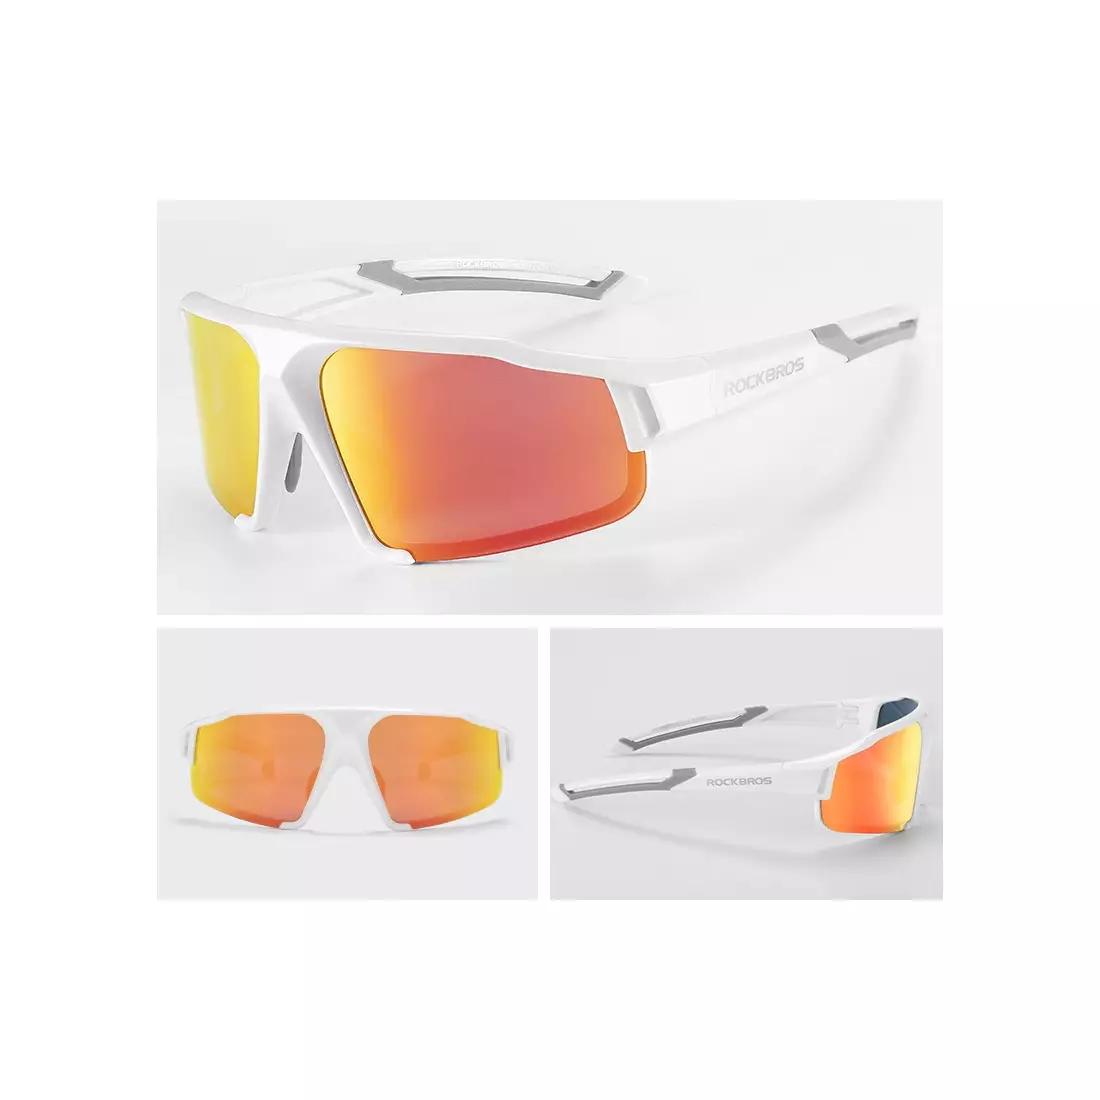 Rockbros SP216WR cyklistické / sportovní brýle s polarizací bílá